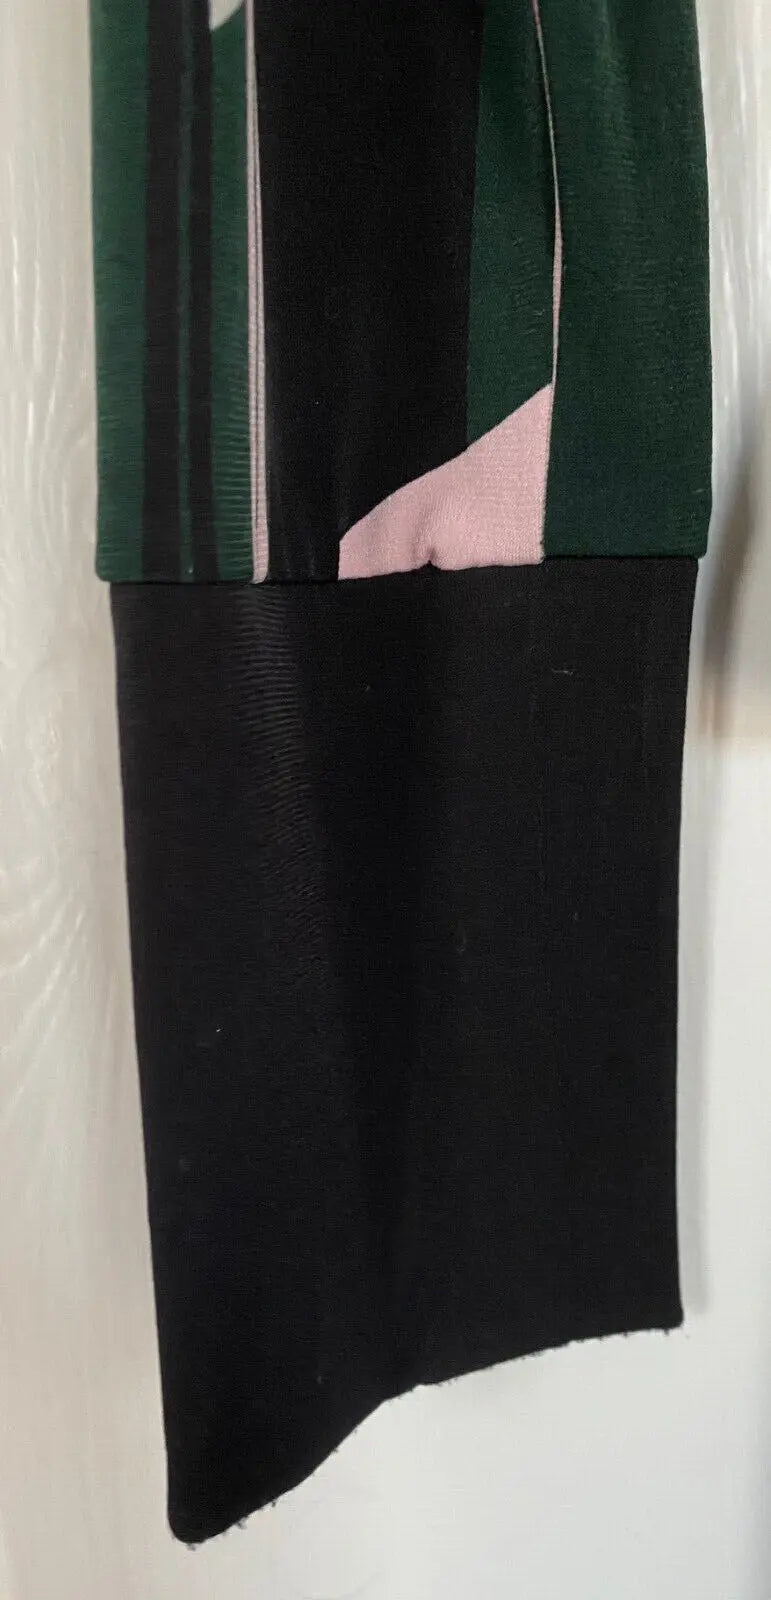 M & S Geometric Pink, Green, Black and White Wrap Dress Size 12 Cherchez La Femme brand